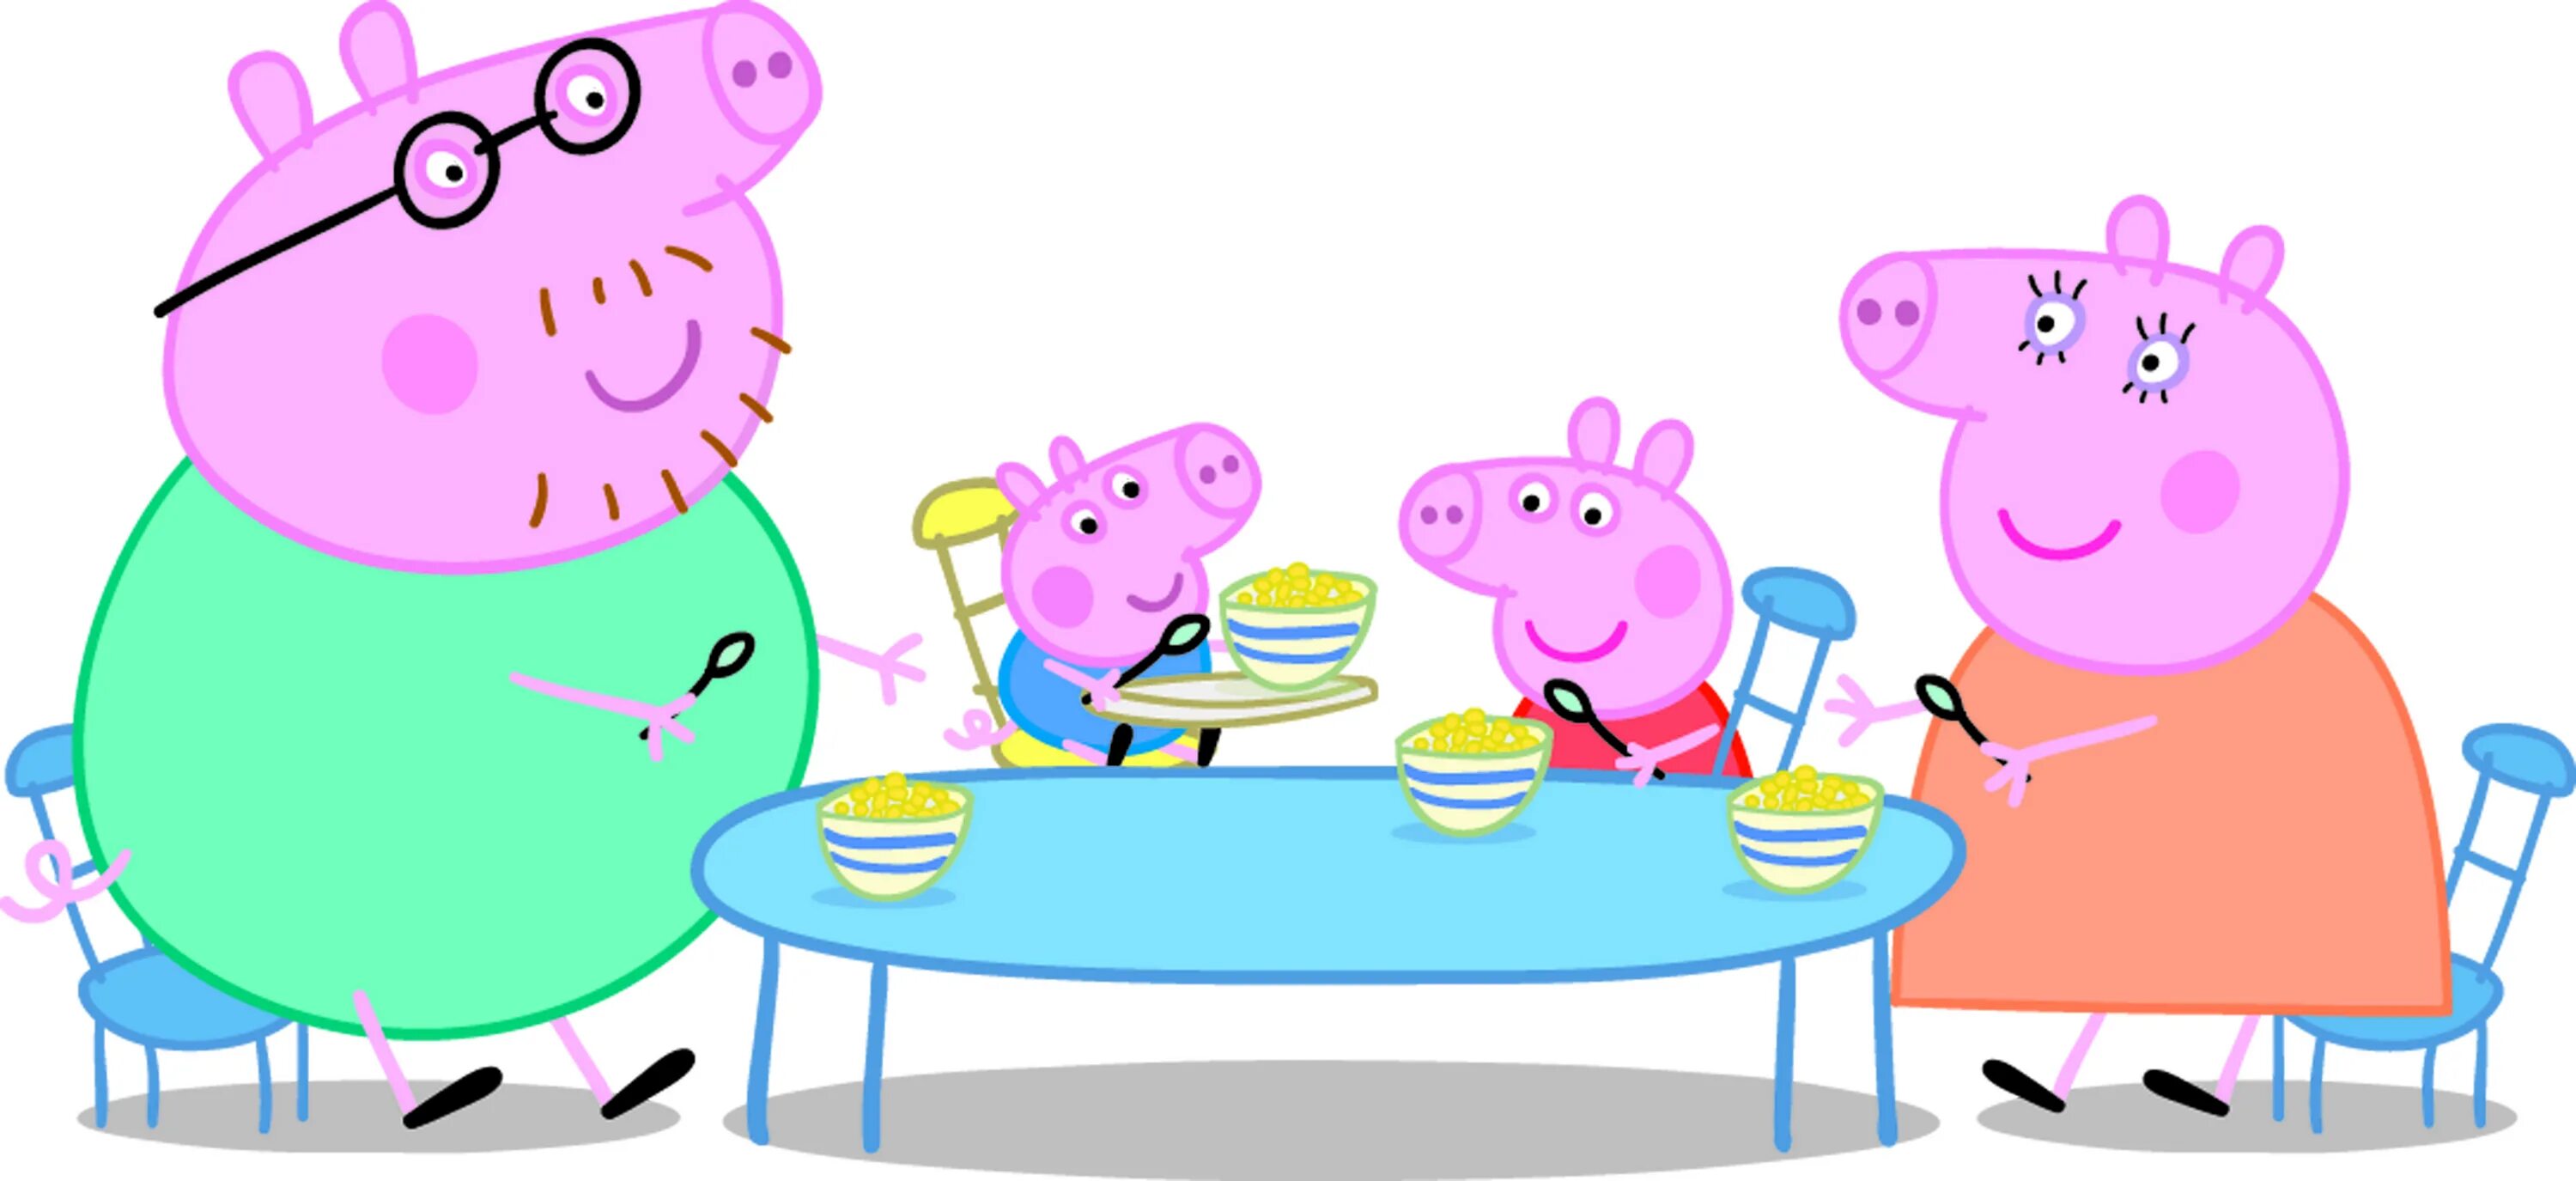 Пеппа сидит. Кухня Свинка Пеппа. Папа Свин и Свинка Пеппа. Семья свинки Пеппы за столом. Свинка Пеппа за столом.